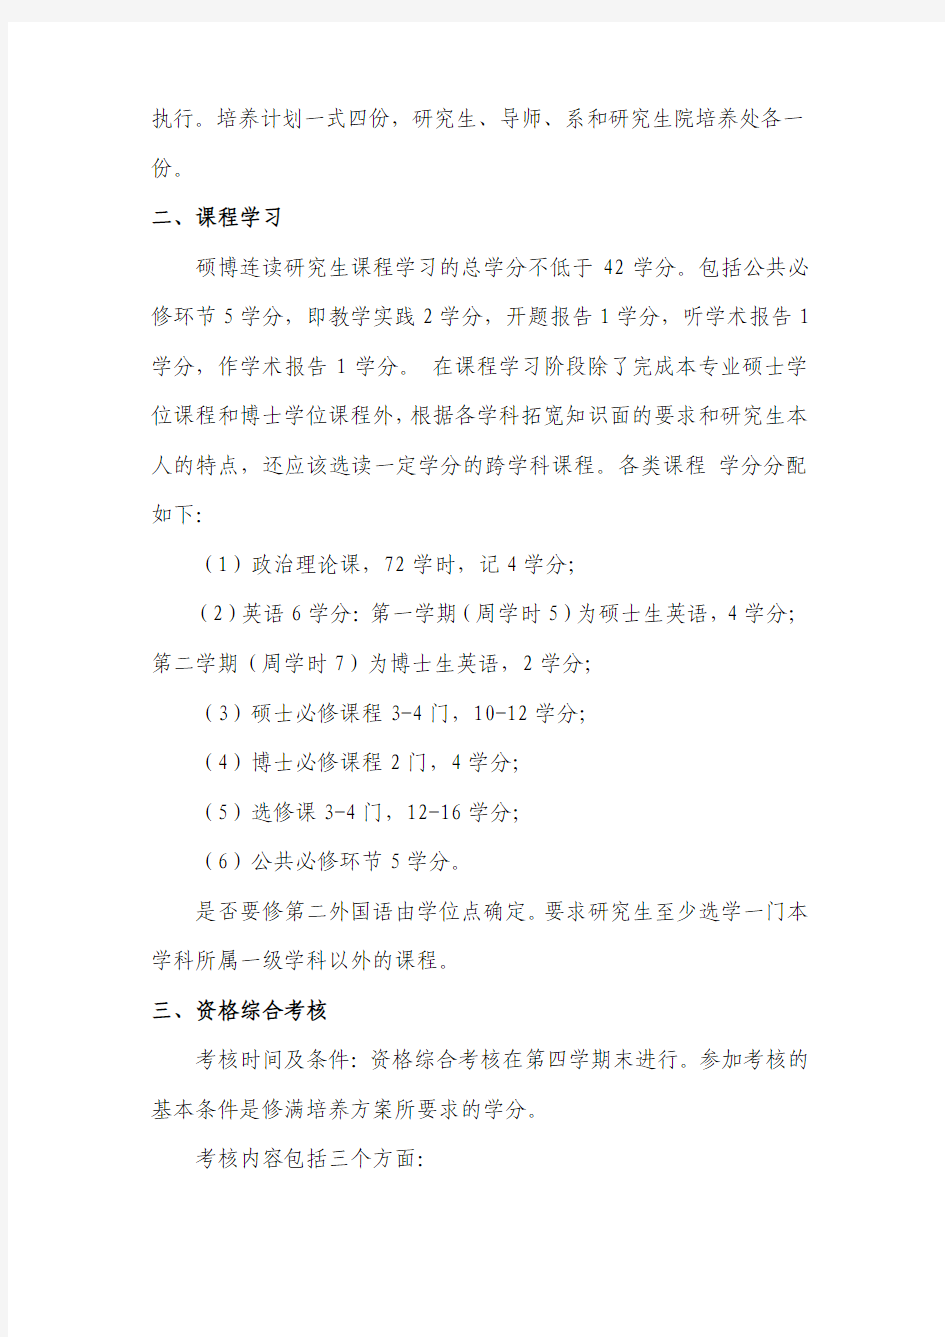 中国科学技术大学试行硕博连读研究生制度的暂行办法